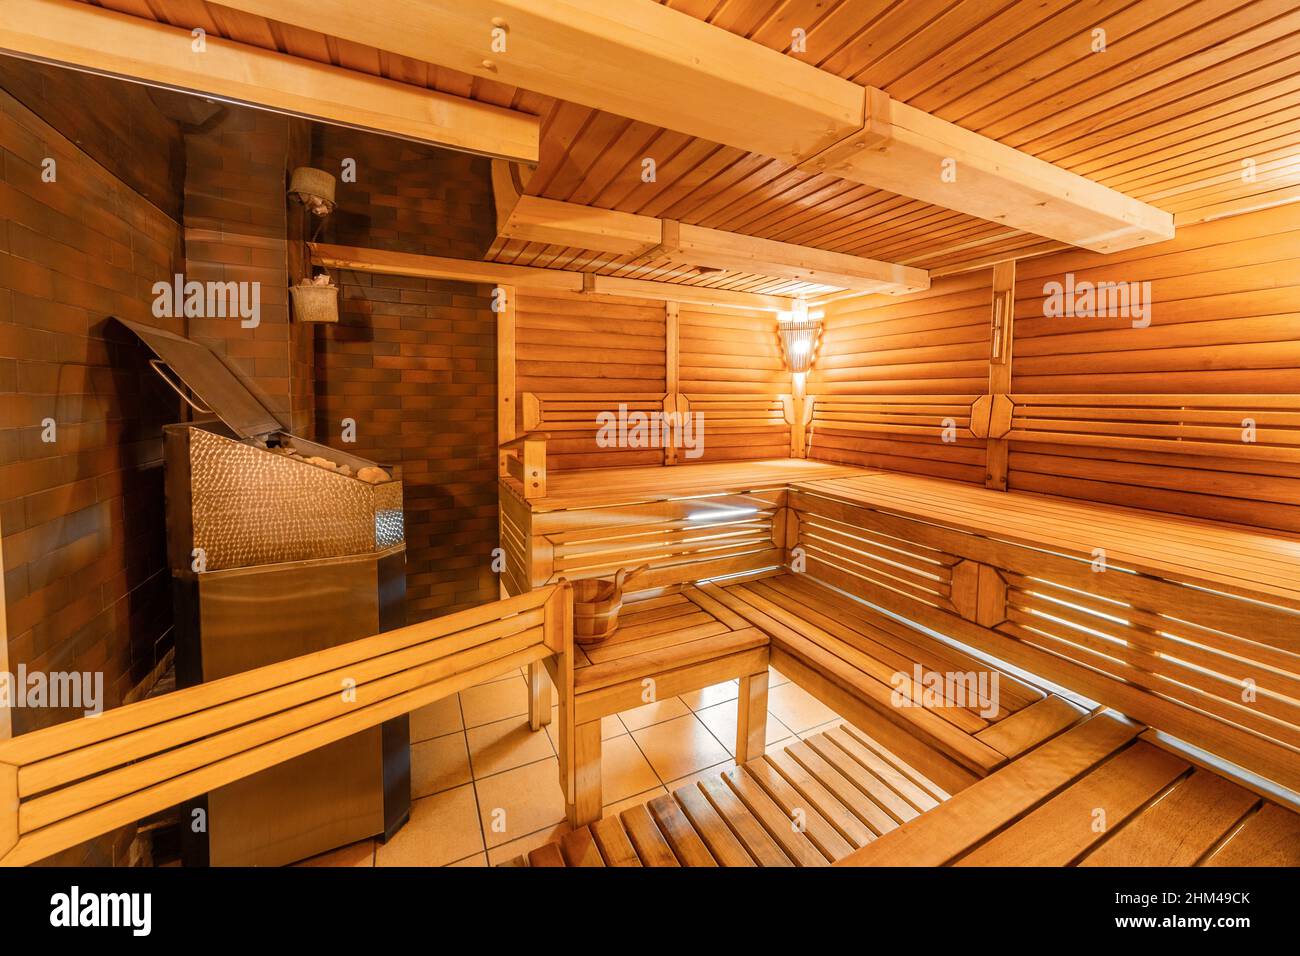 Intérieur du sauna finlandais, sauna classique en bois Photo Stock - Alamy